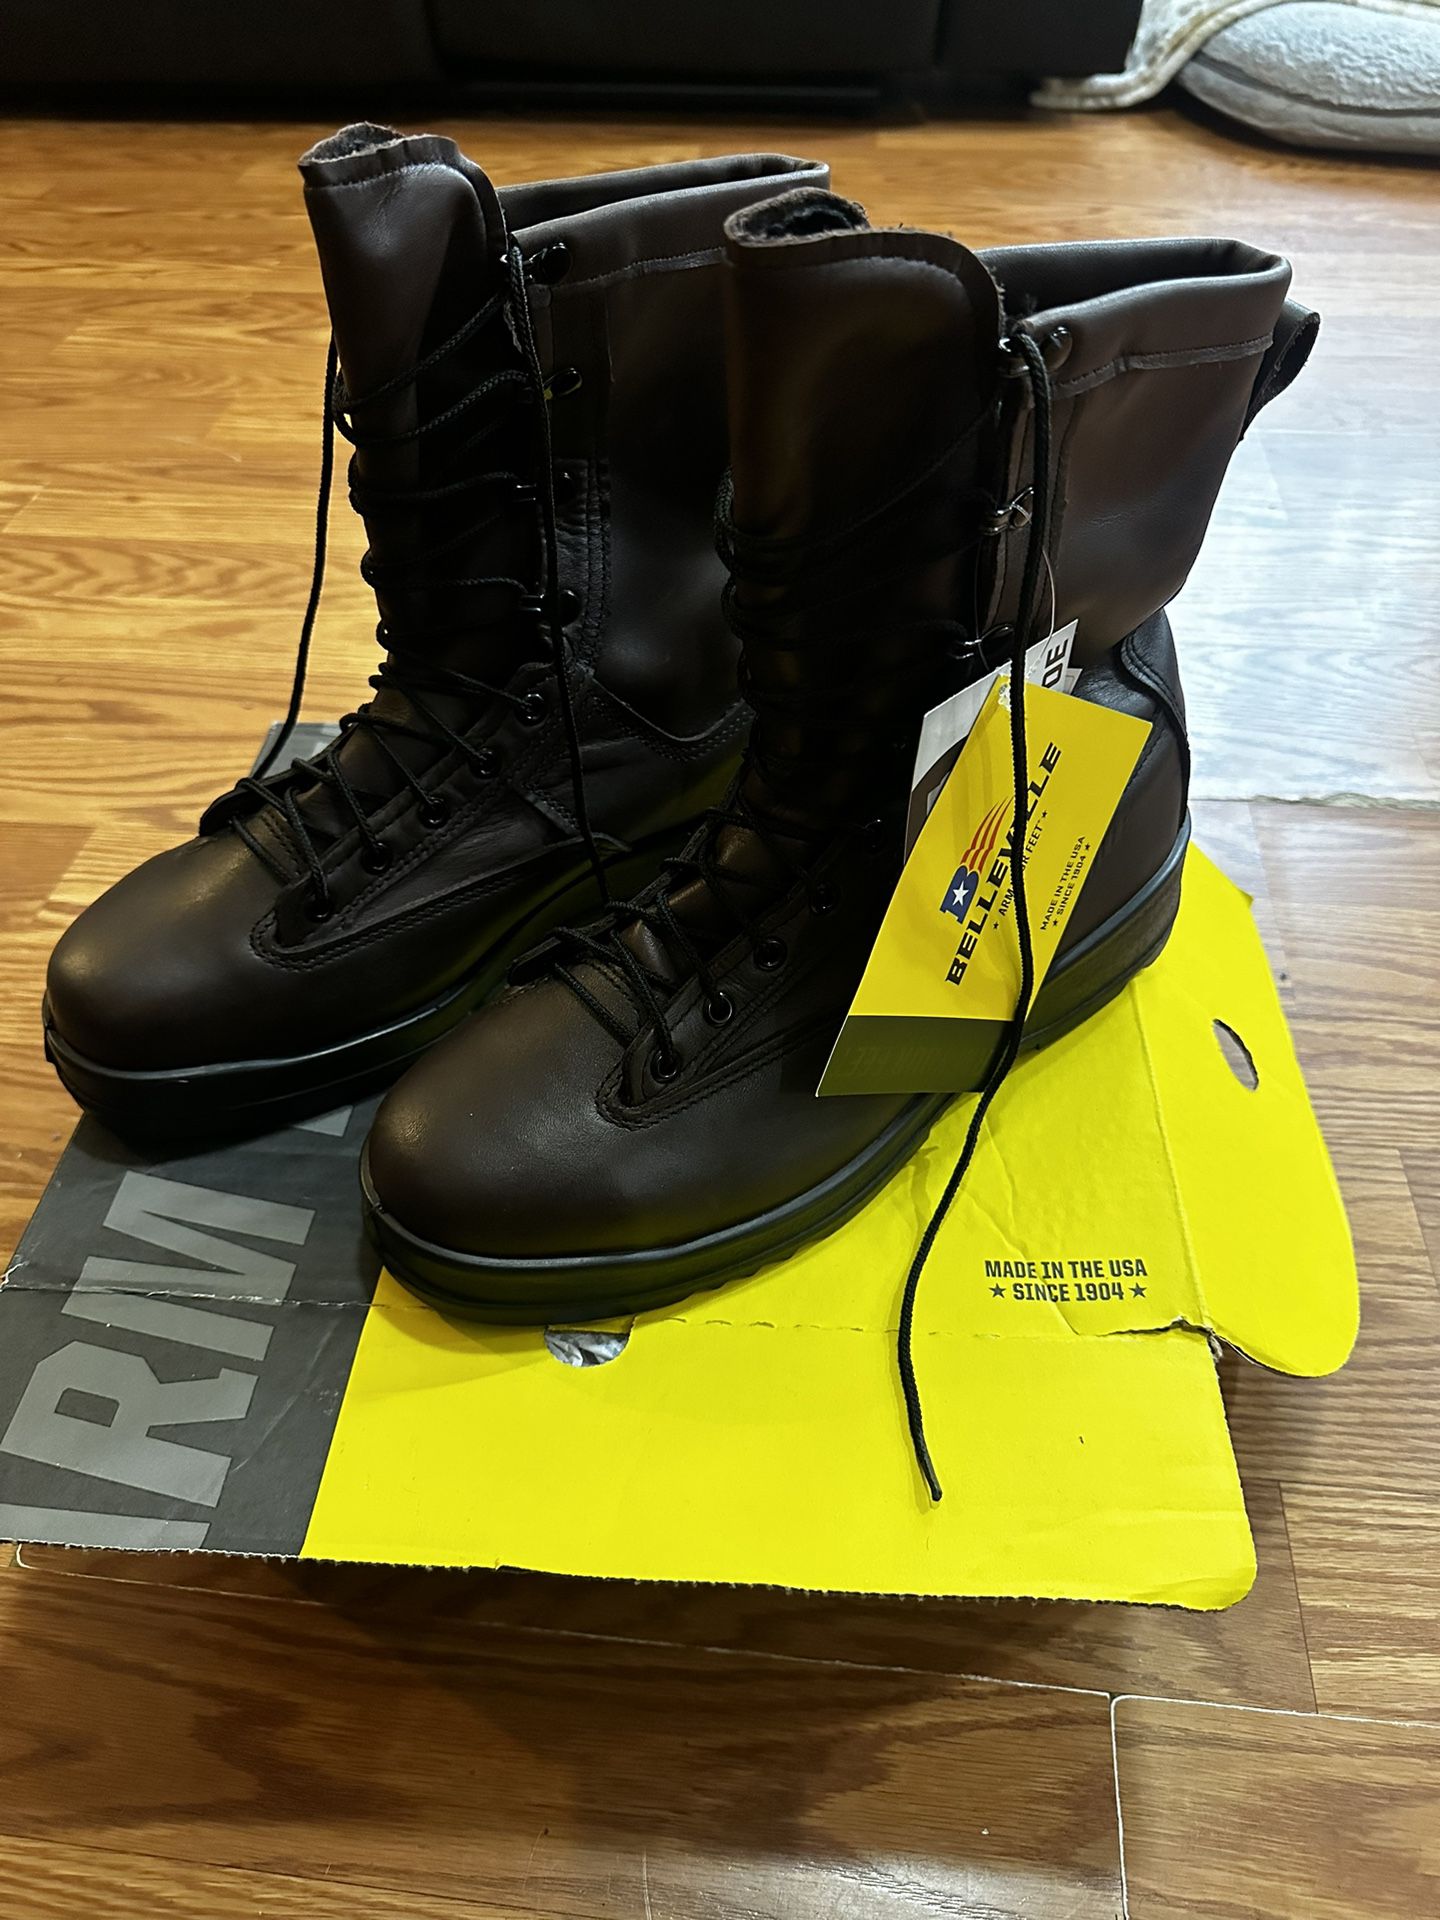 Work boots-Men's Belleville 330 Steel Toe Boots